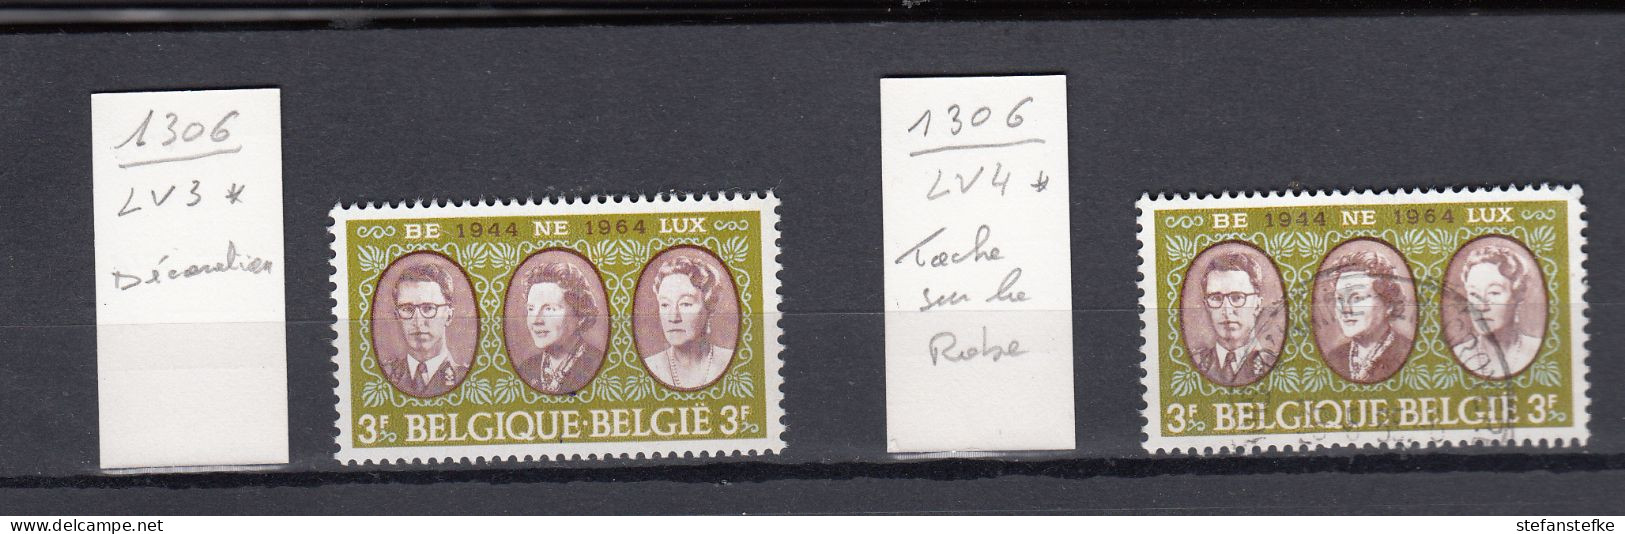 Belgie - Belgique : Ocb Nr:  1306 -  V3 ** MNH  + 1306 - V4 Used  (zie Scan) - 1961-1990